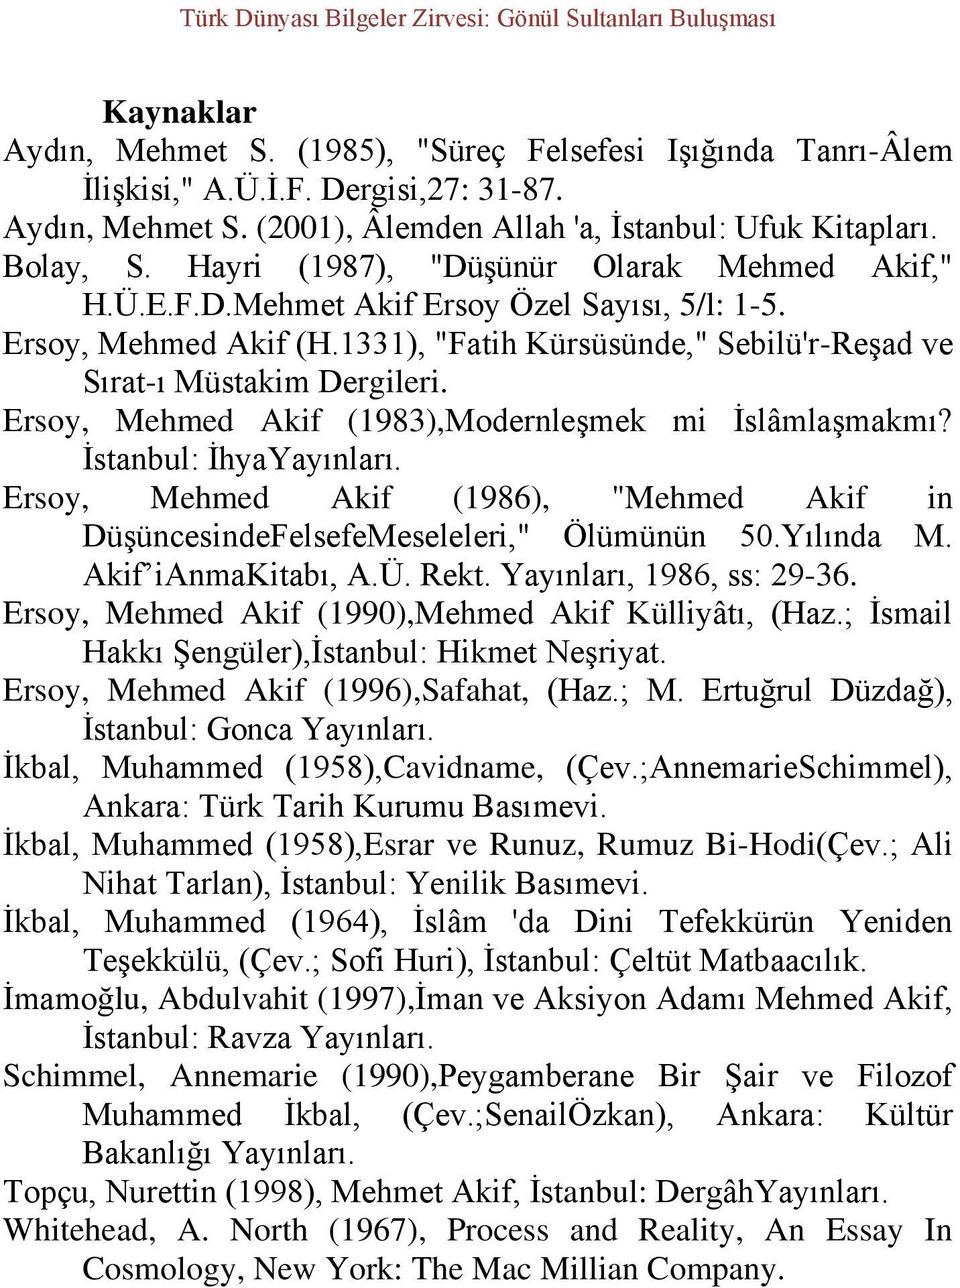 Ersoy, Mehmed Akif (1983),Modernleşmek mi İslâmlaşmakmı? İstanbul: İhyaYayınları. Ersoy, Mehmed Akif (1986), "Mehmed Akif in DüşüncesindeFelsefeMeseleleri," Ölümünün 50.Yılında M. Akif ianmakitabı, A.